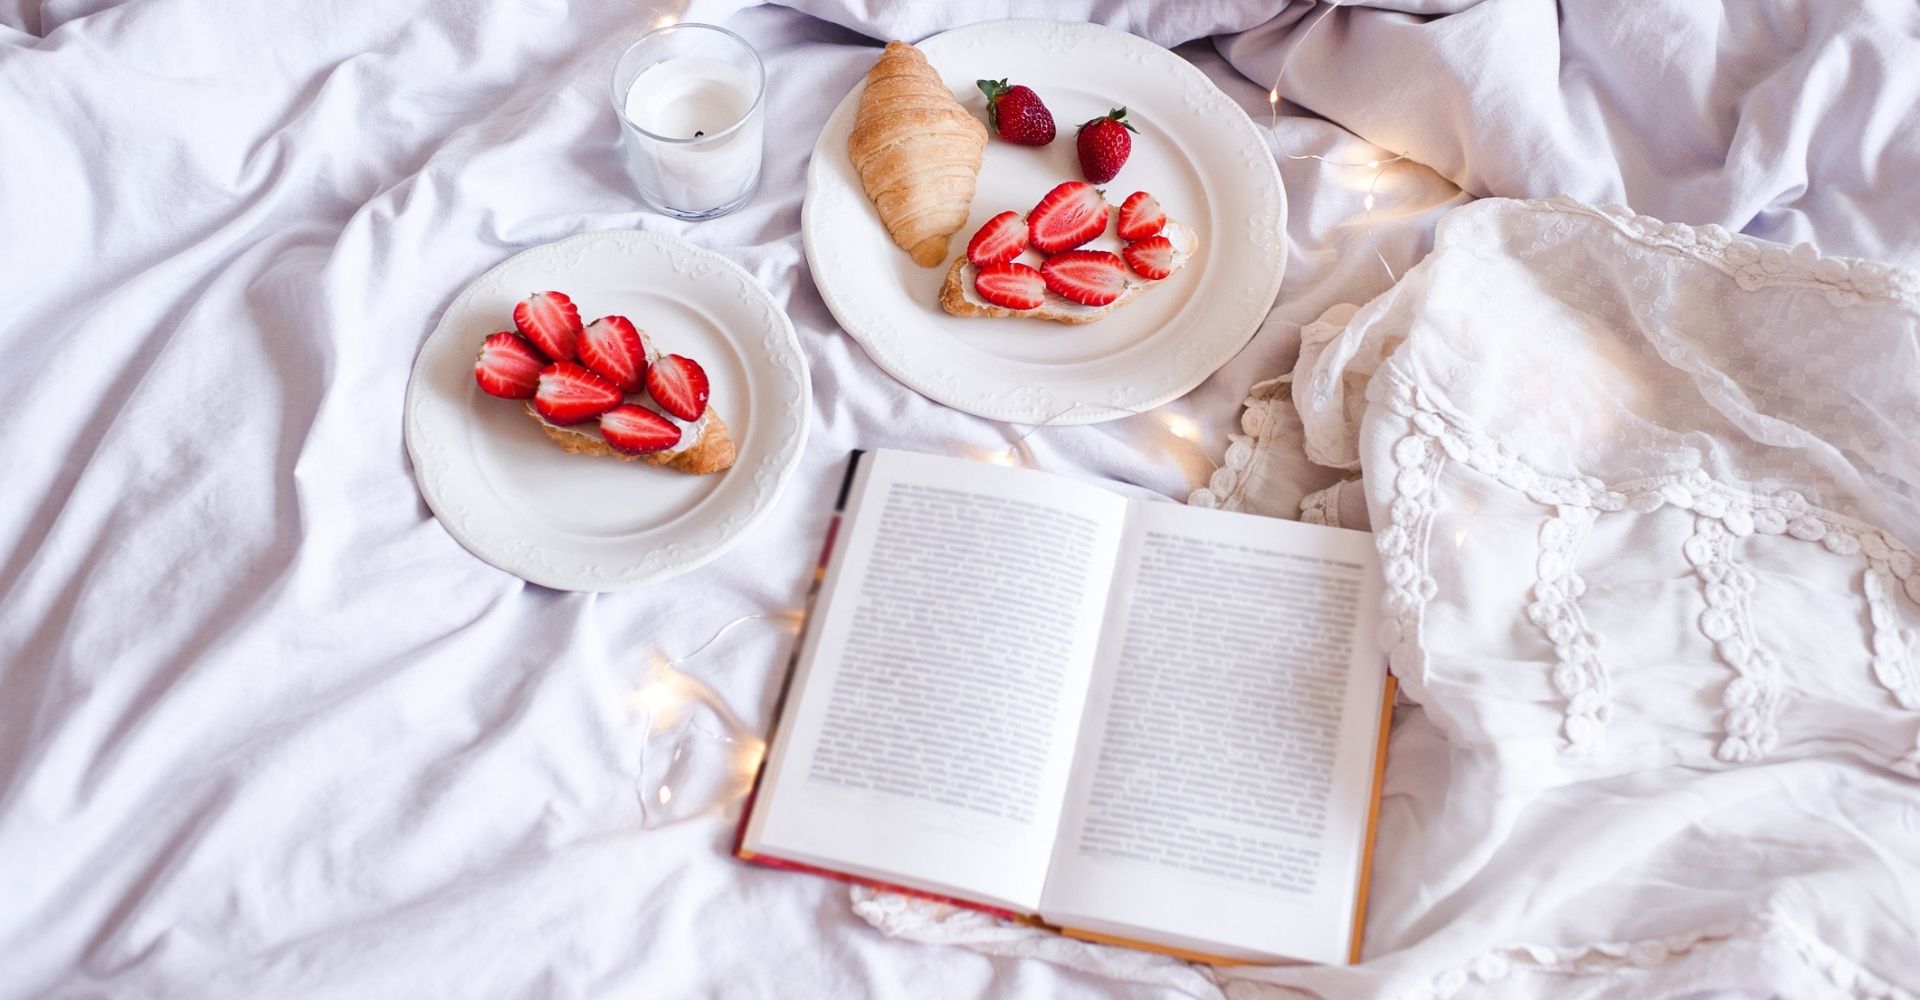 Un libro aperto sul lenzuolo bianco di un letto disfatto, con due piatti da colazione contenenti delle fragole